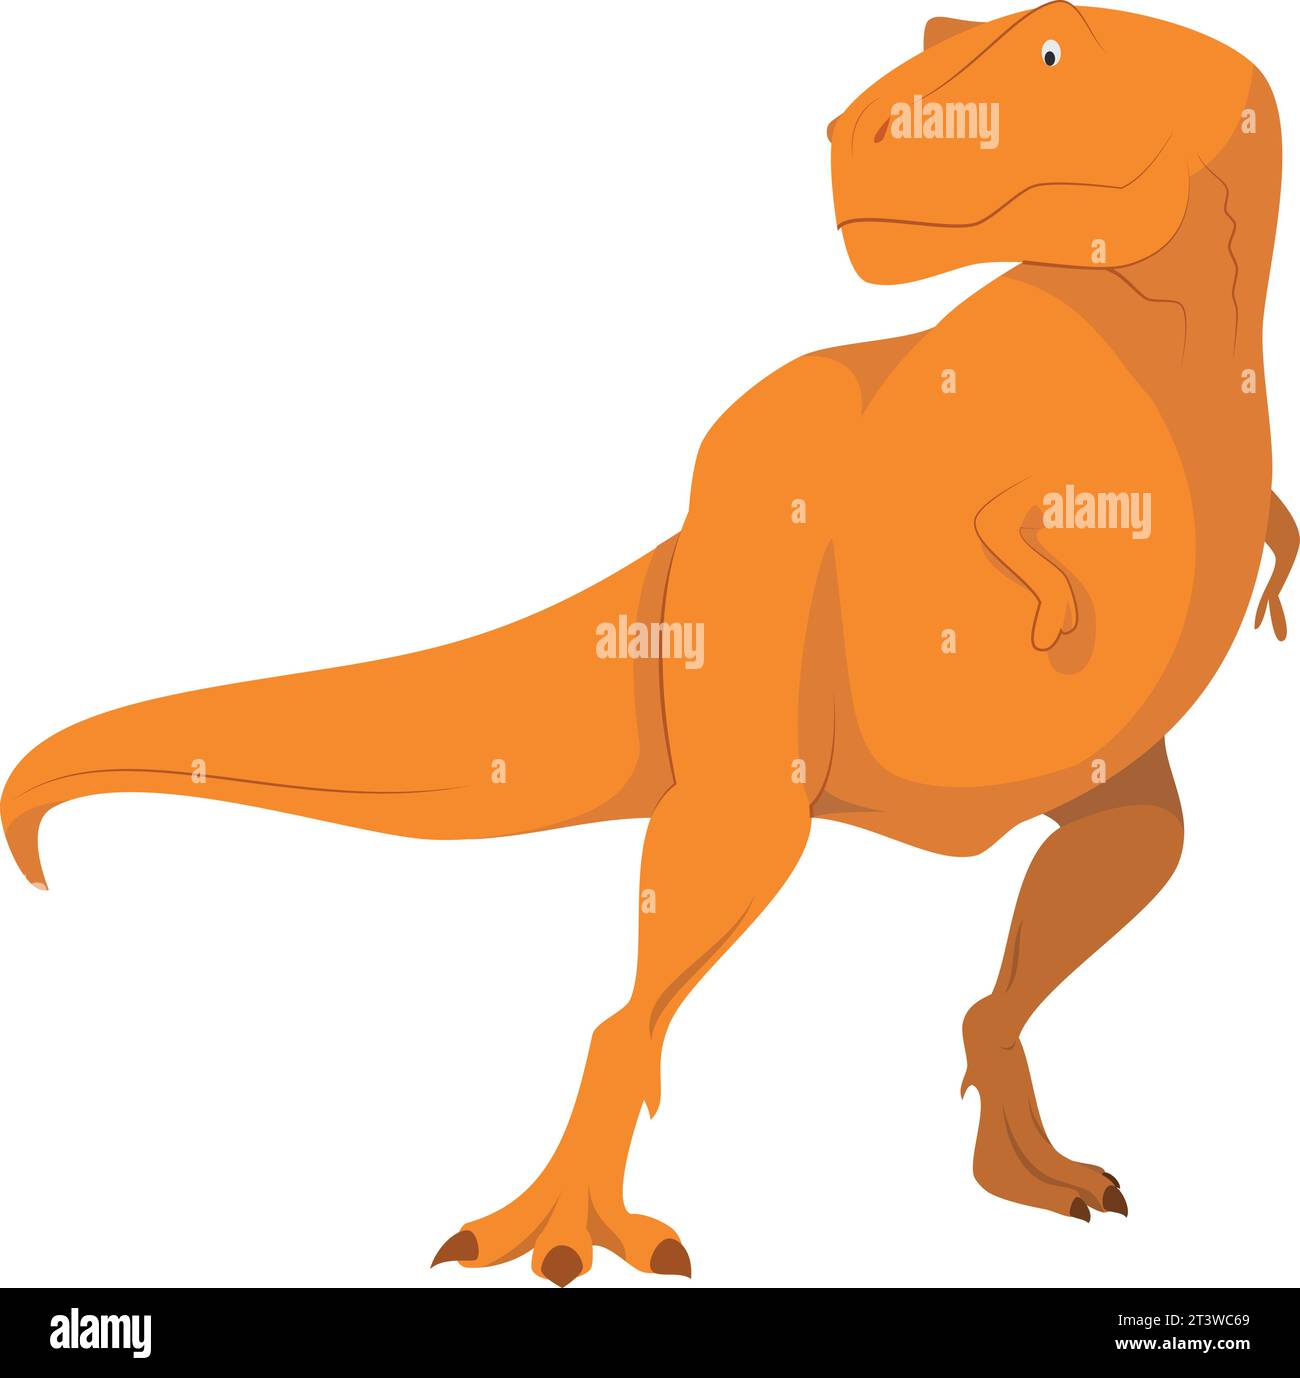 Premium Vector  Cute tyrannosaurus rex cartoon illustration. t